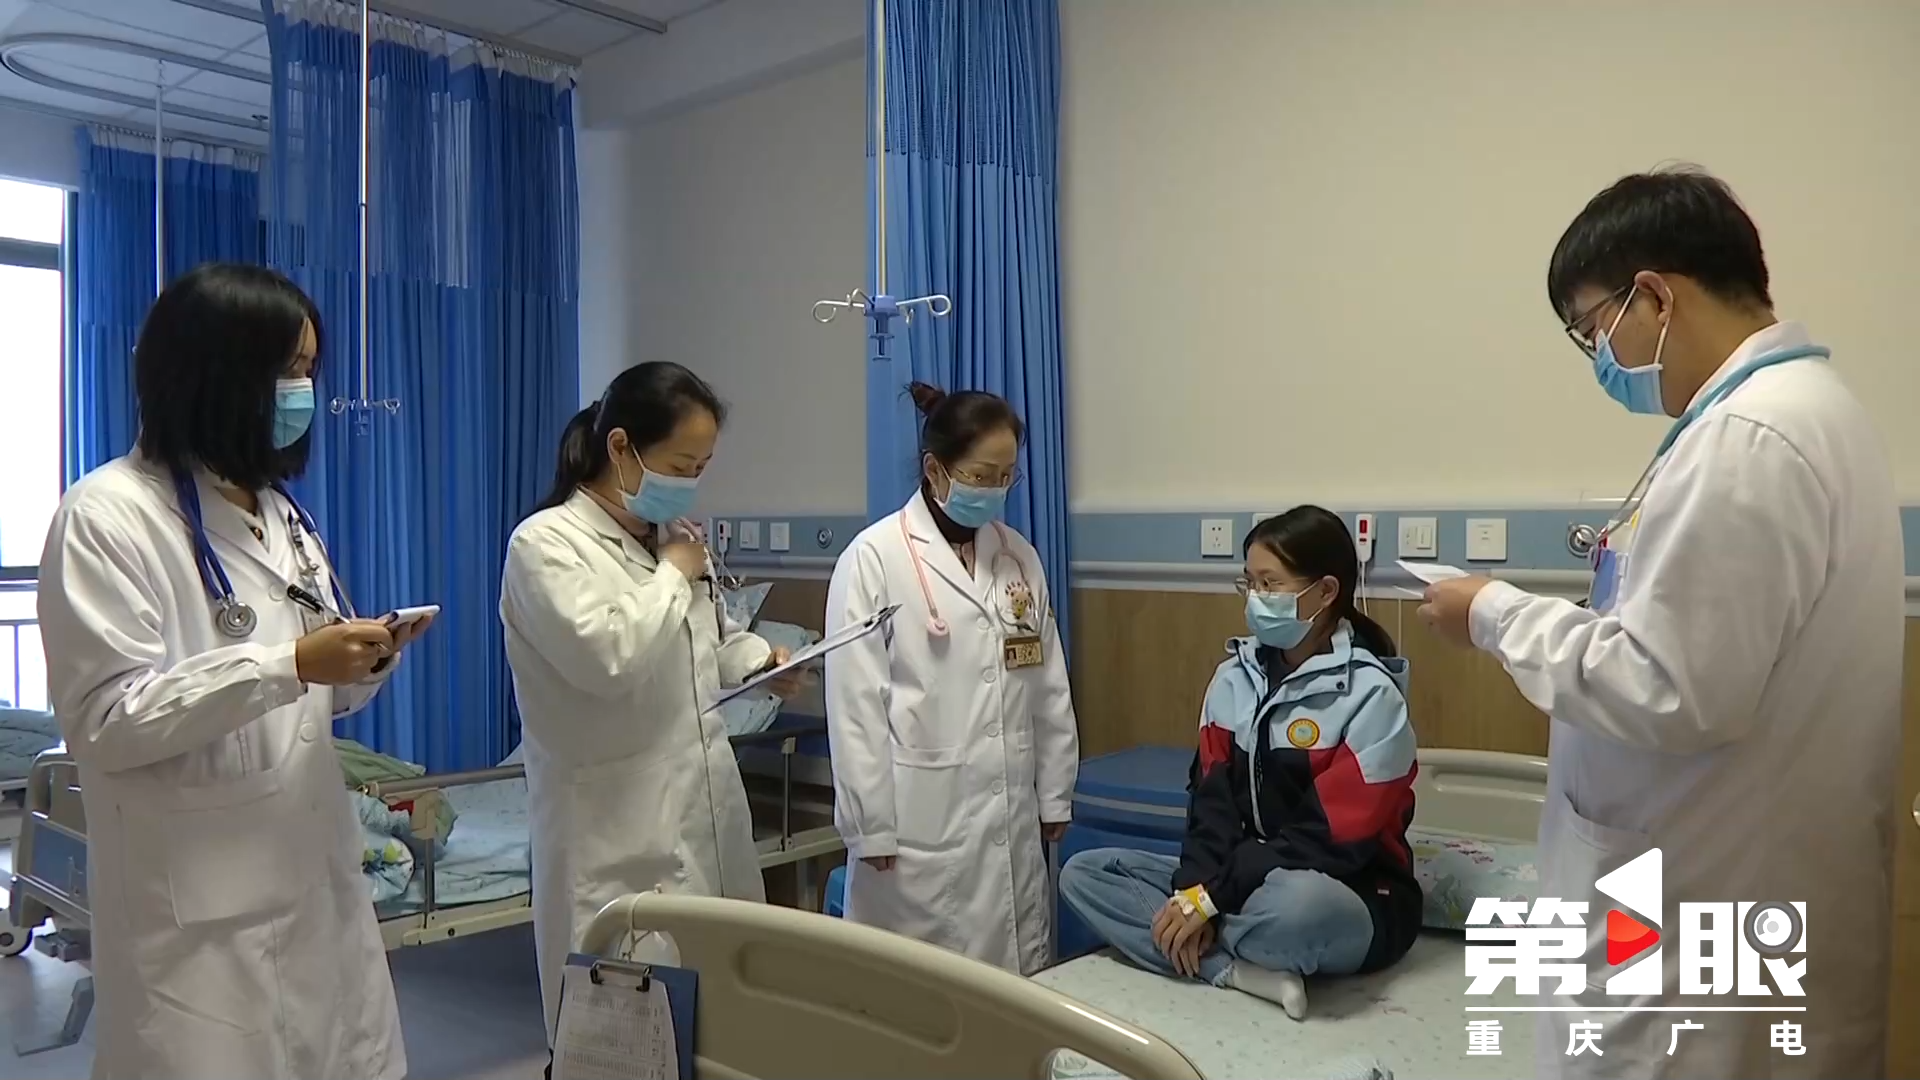 方便就近就诊！重庆共有1000余家医疗机构提供儿童诊疗3